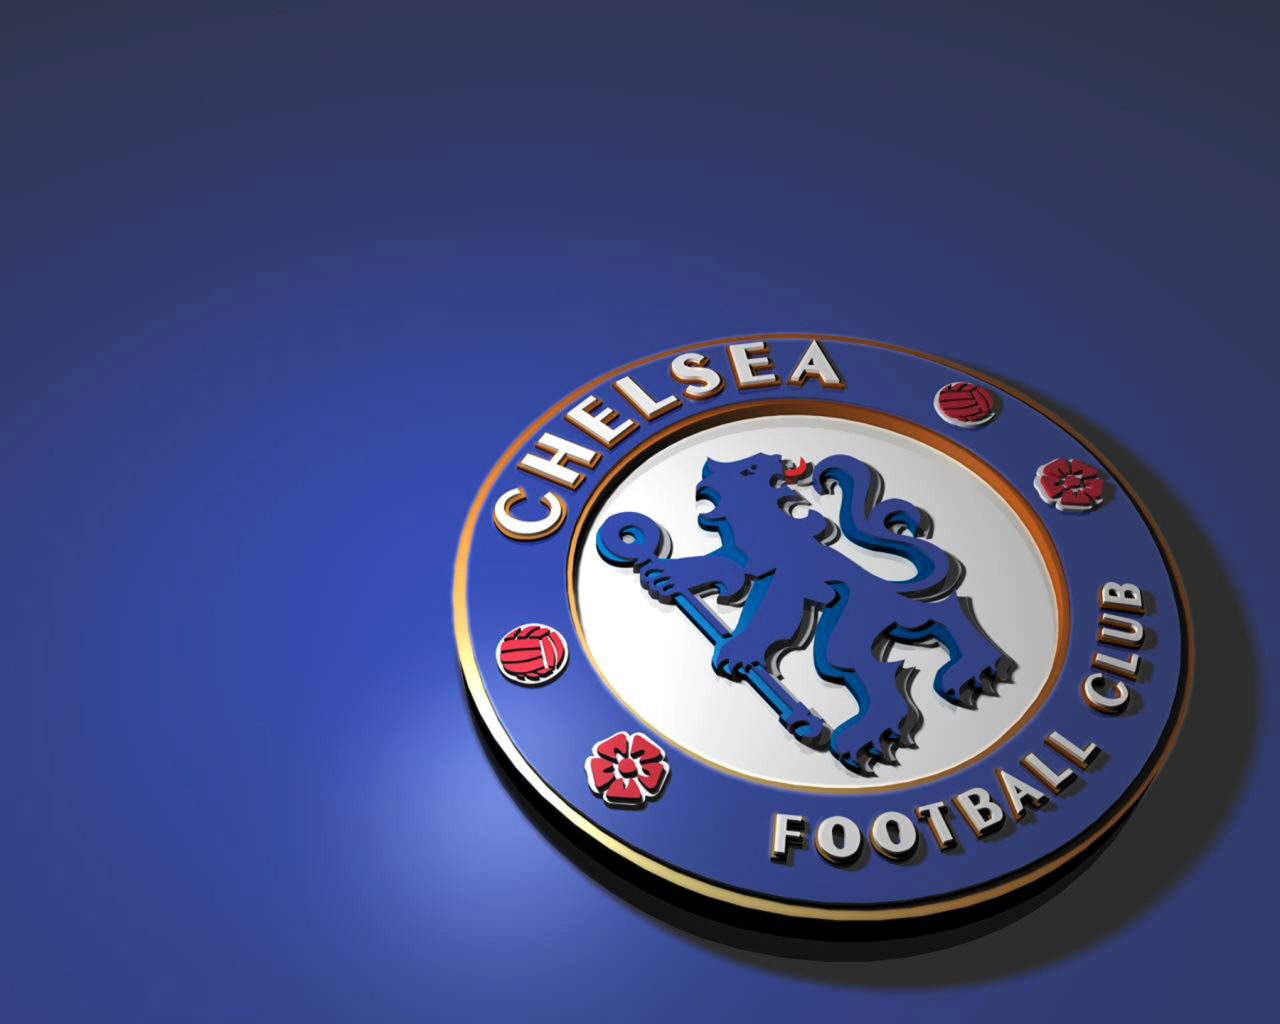 Футбольный клуб Челси логотип на синем фоне